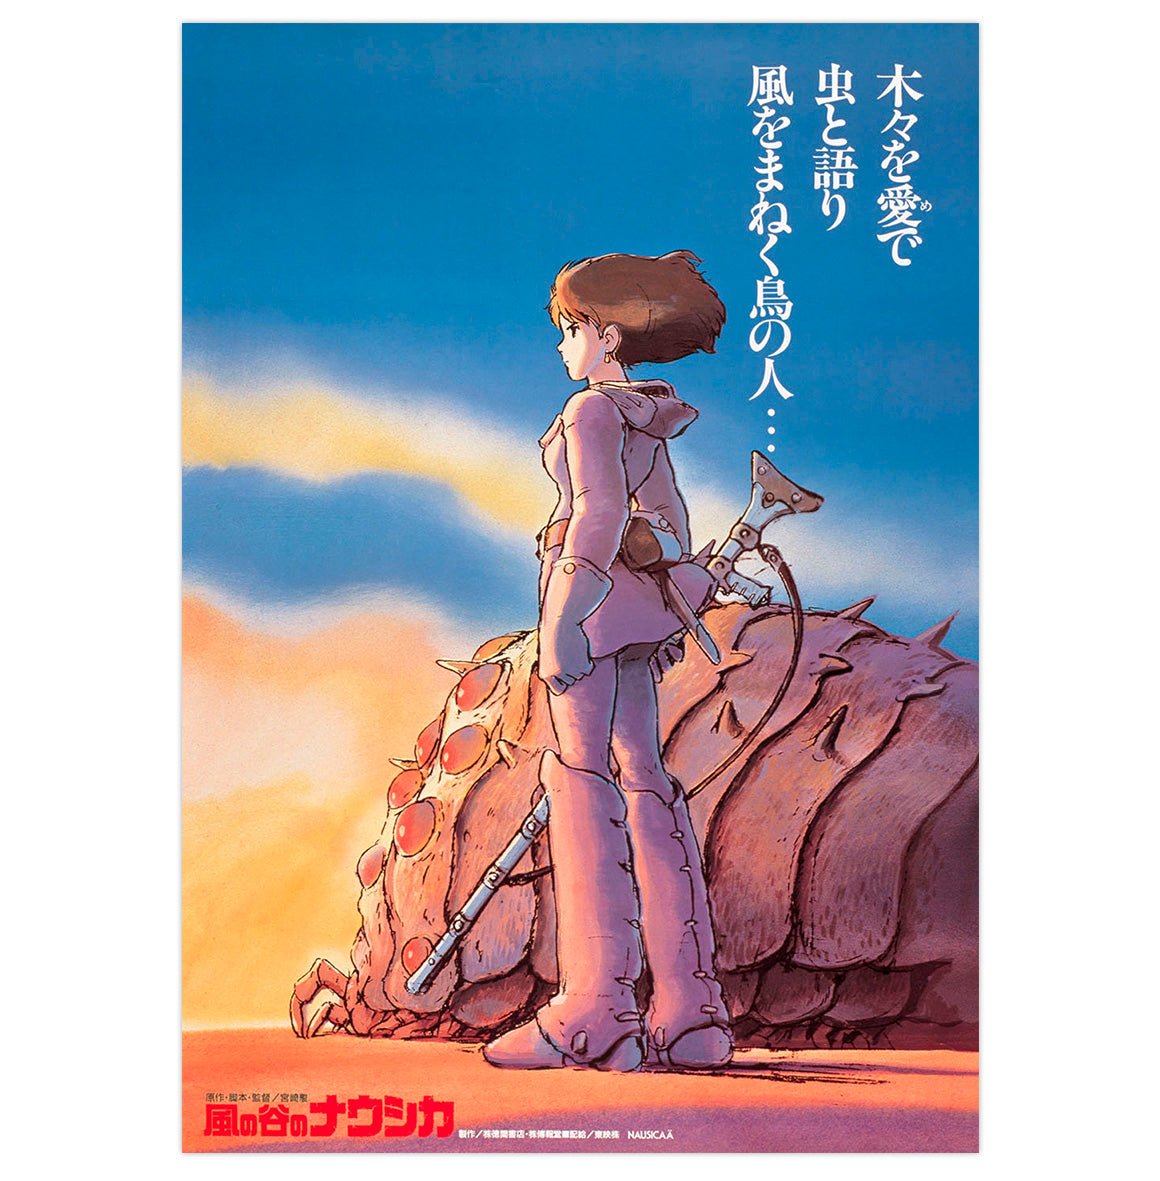 Mini poster adhesivo y reposicionable: Cartel El viaje de Chihiro